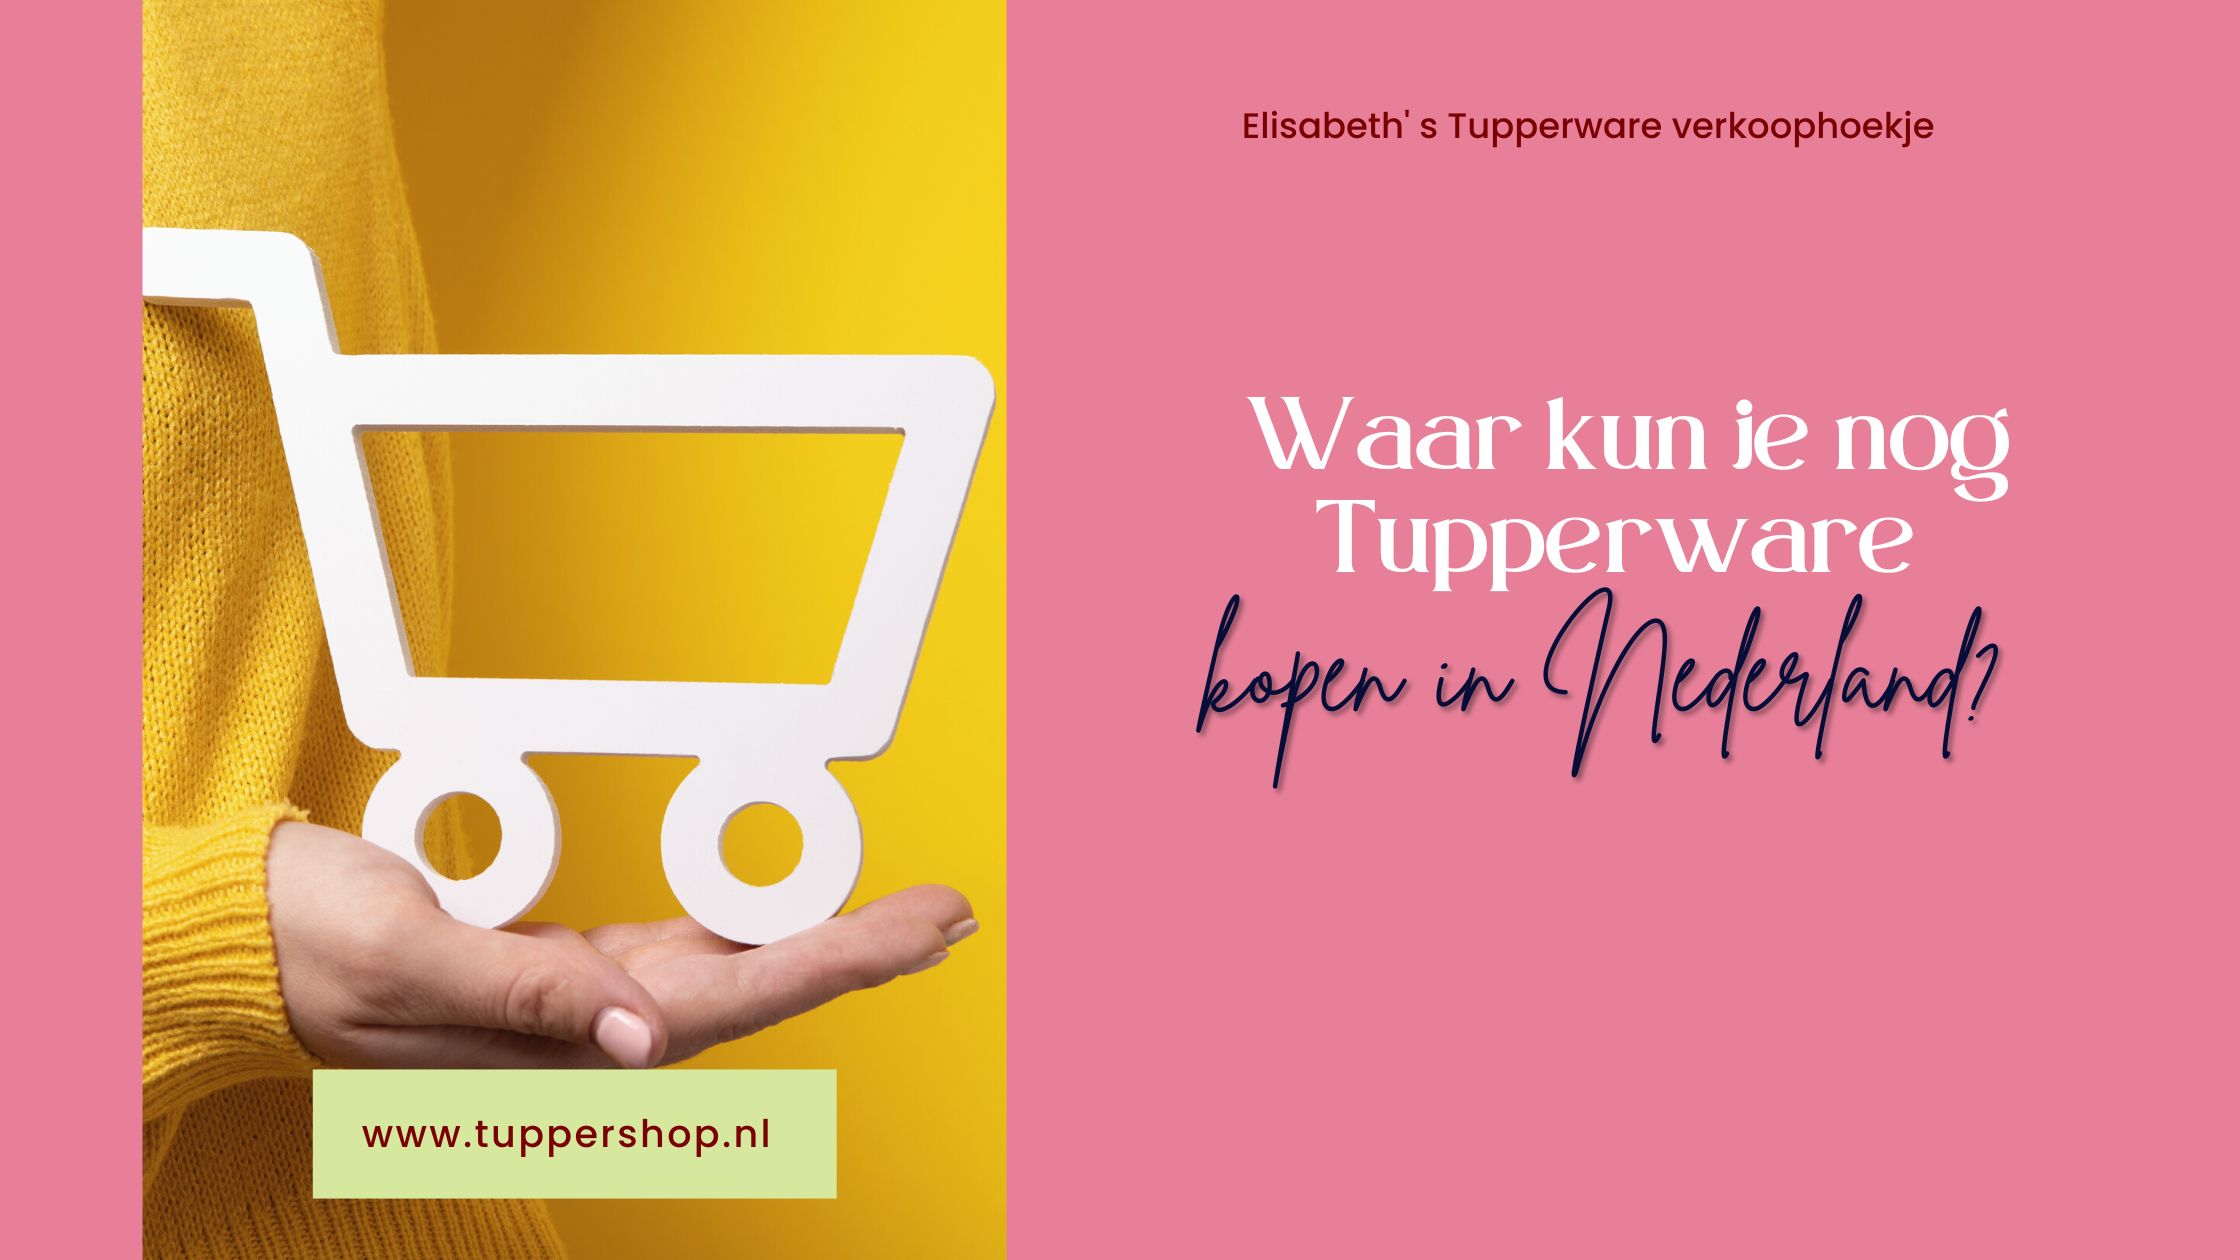 Waar kun je nog Tupperware kopen in Nederland?